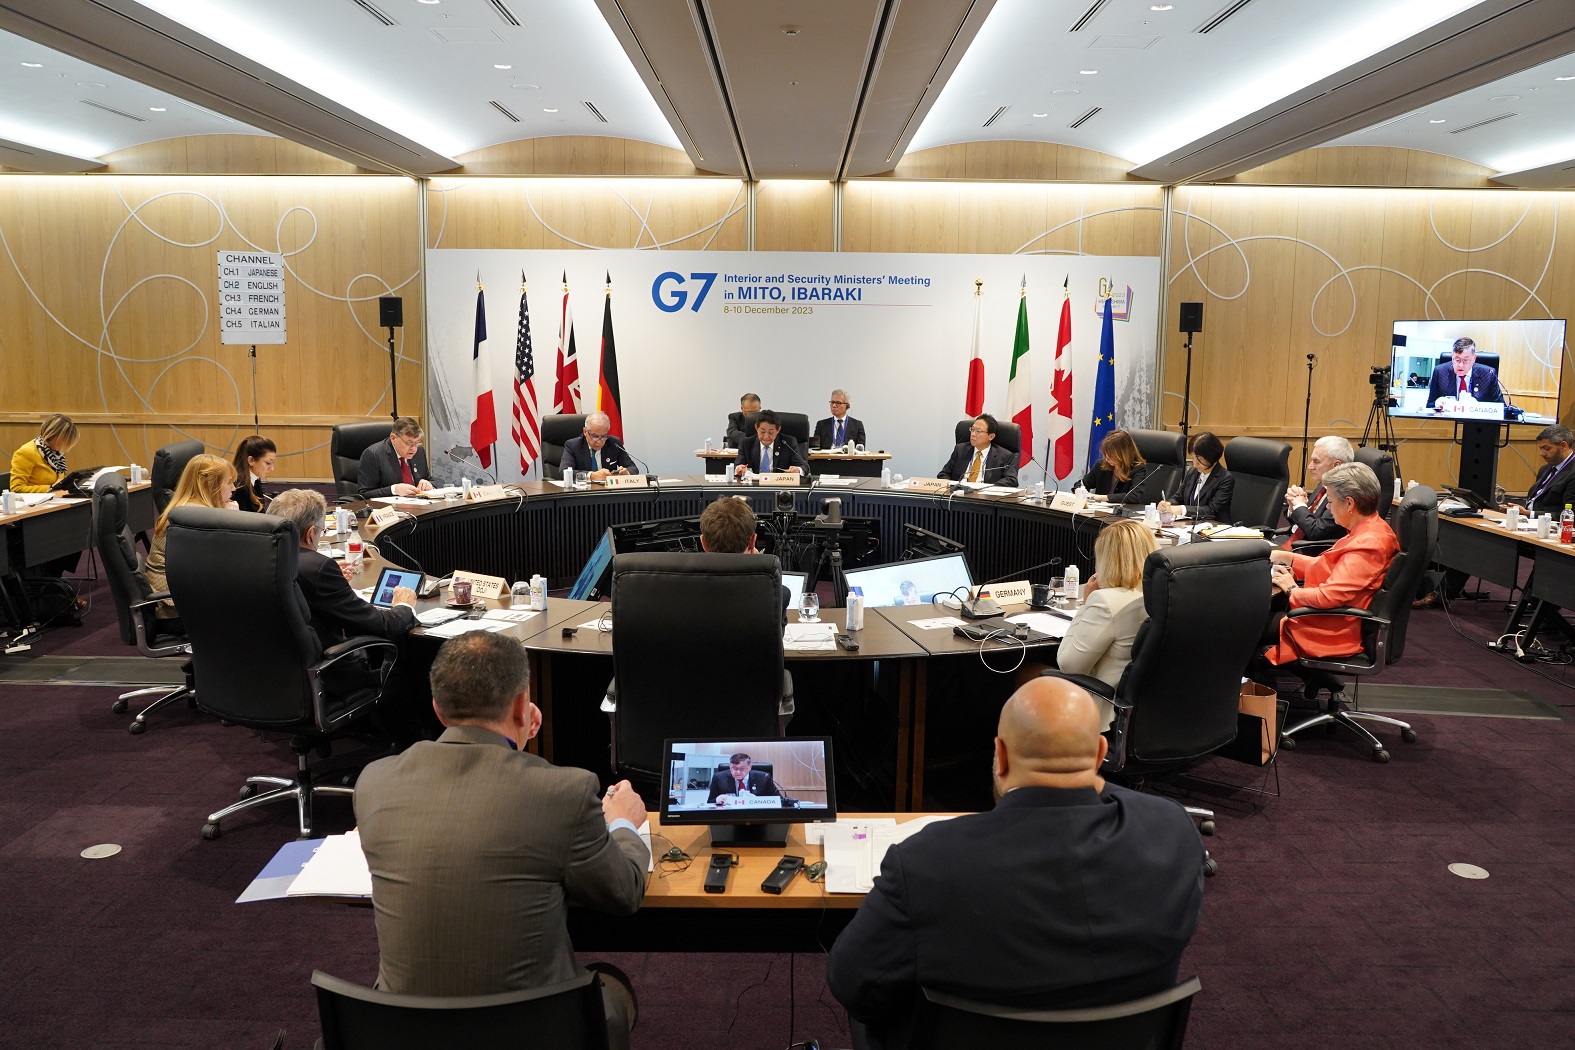 G7茨城水戸内務・安全担当大臣会合#G7内相会合#警察庁#G7サミット#G7#フォトセッション